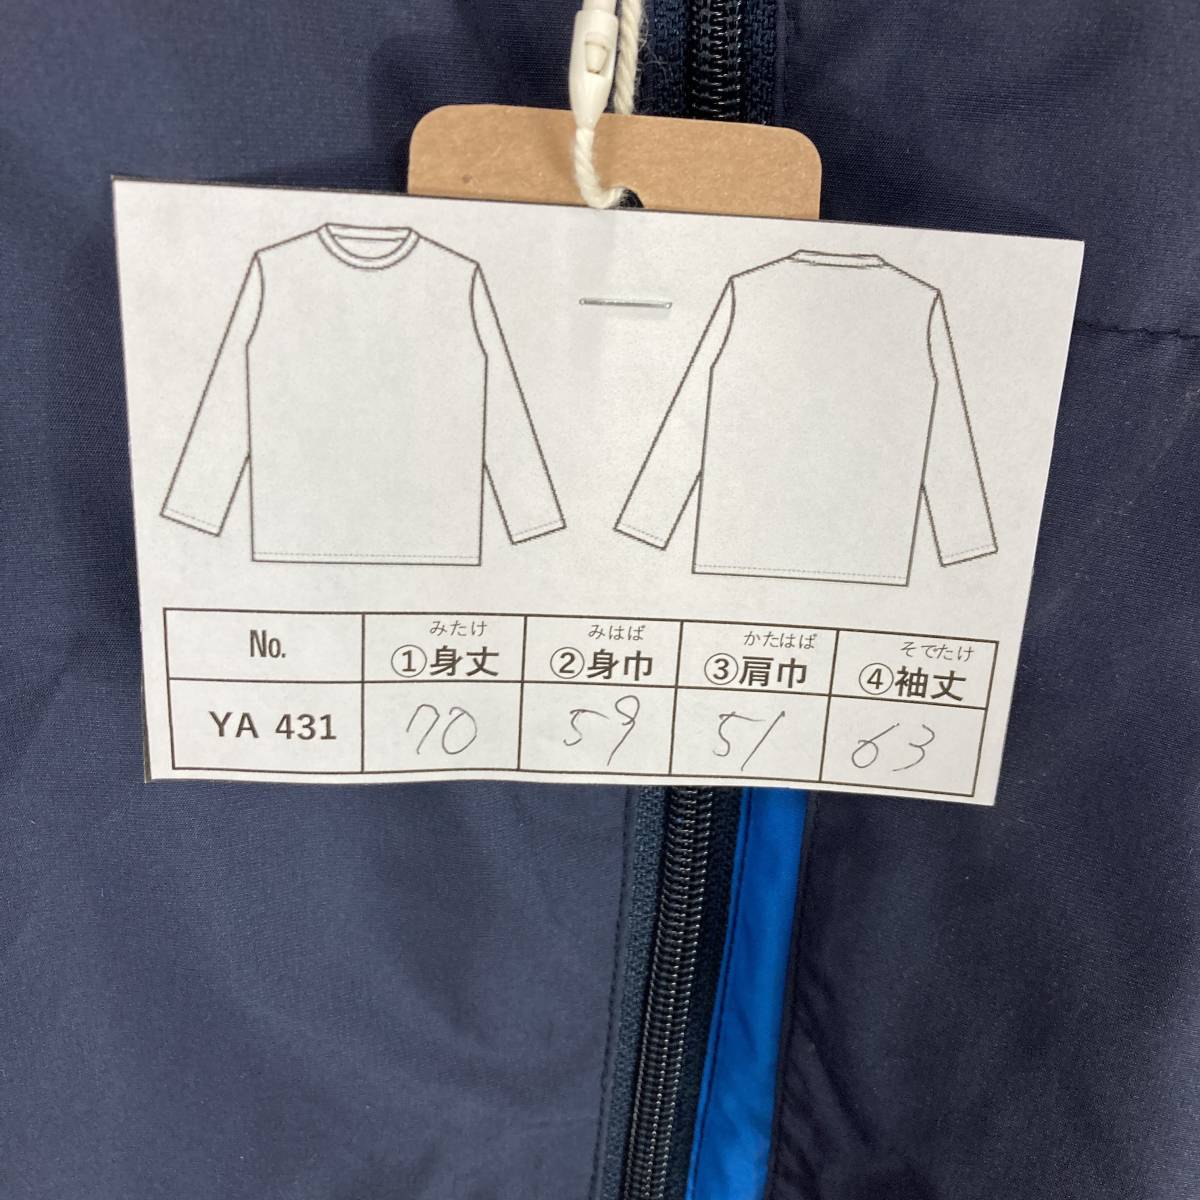 YA431 [2003]Reebok спорт одежда размер 3L цвет темно-синий мужской женский двоякое применение [120102000077]